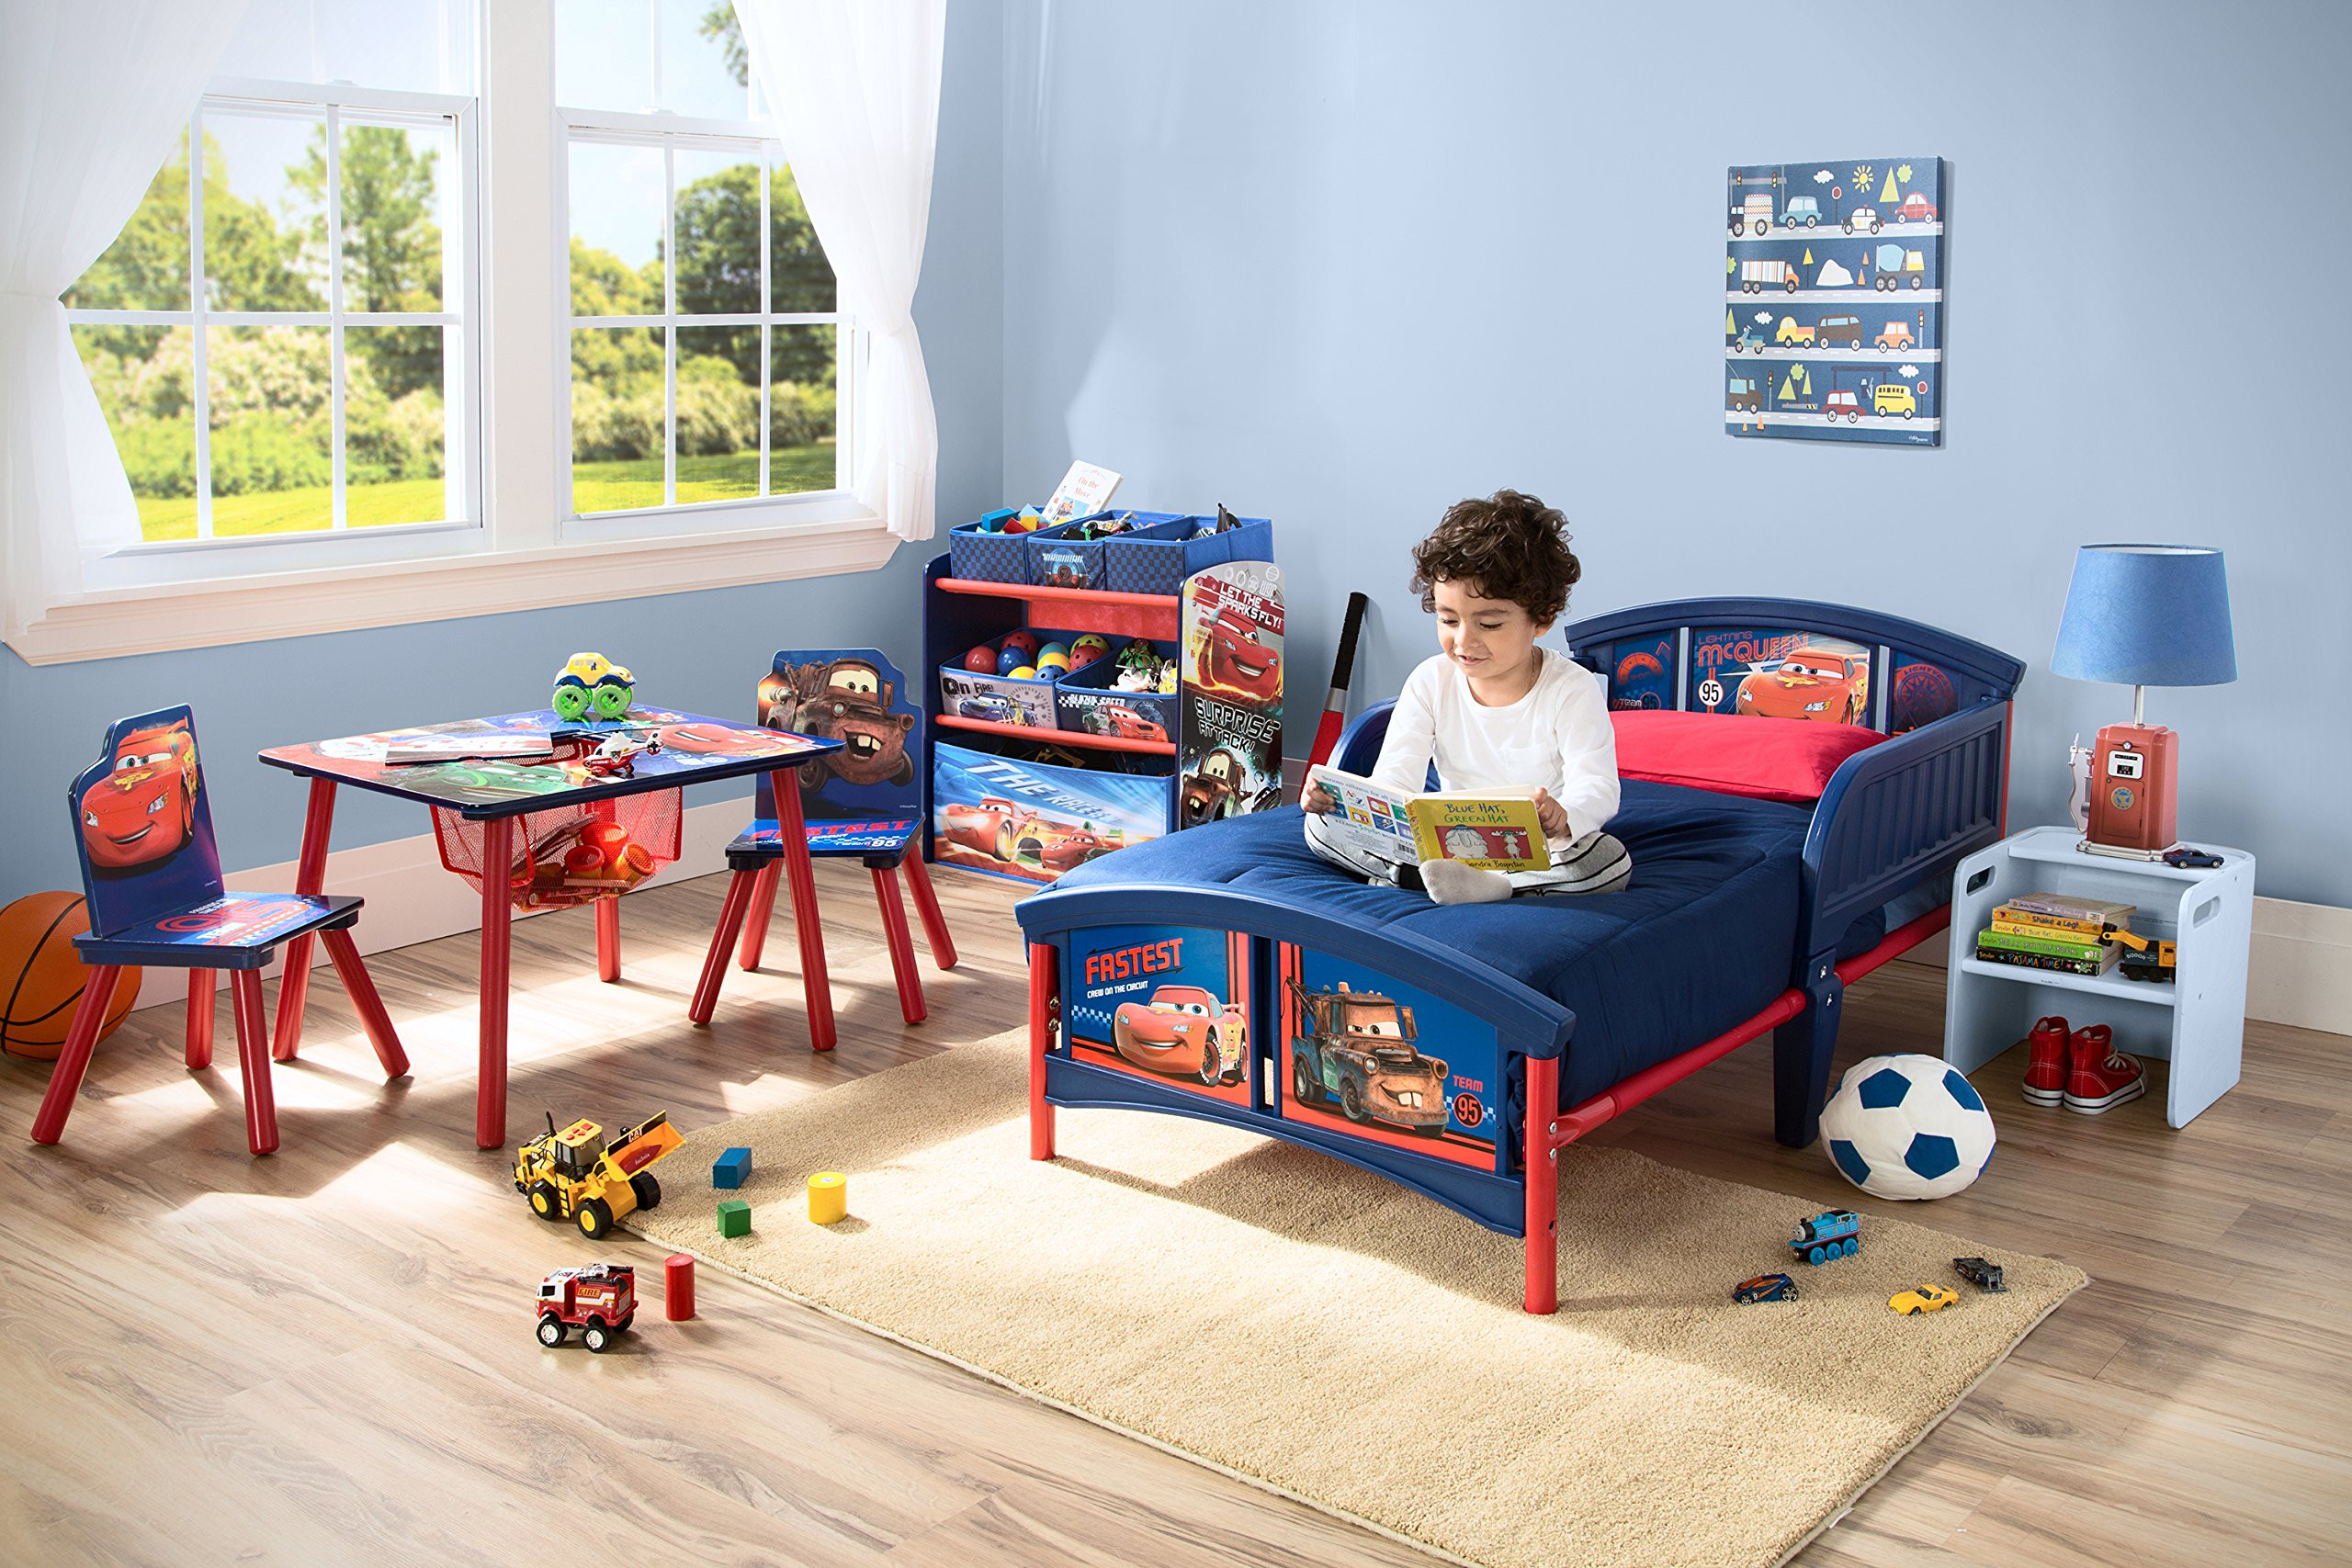 Toddler Bedroom Sets For Boys Awesome Disney Cars Plastic Toddler Bed Kids Bedroom Furniture Of Toddler Bedroom Sets For Boys 